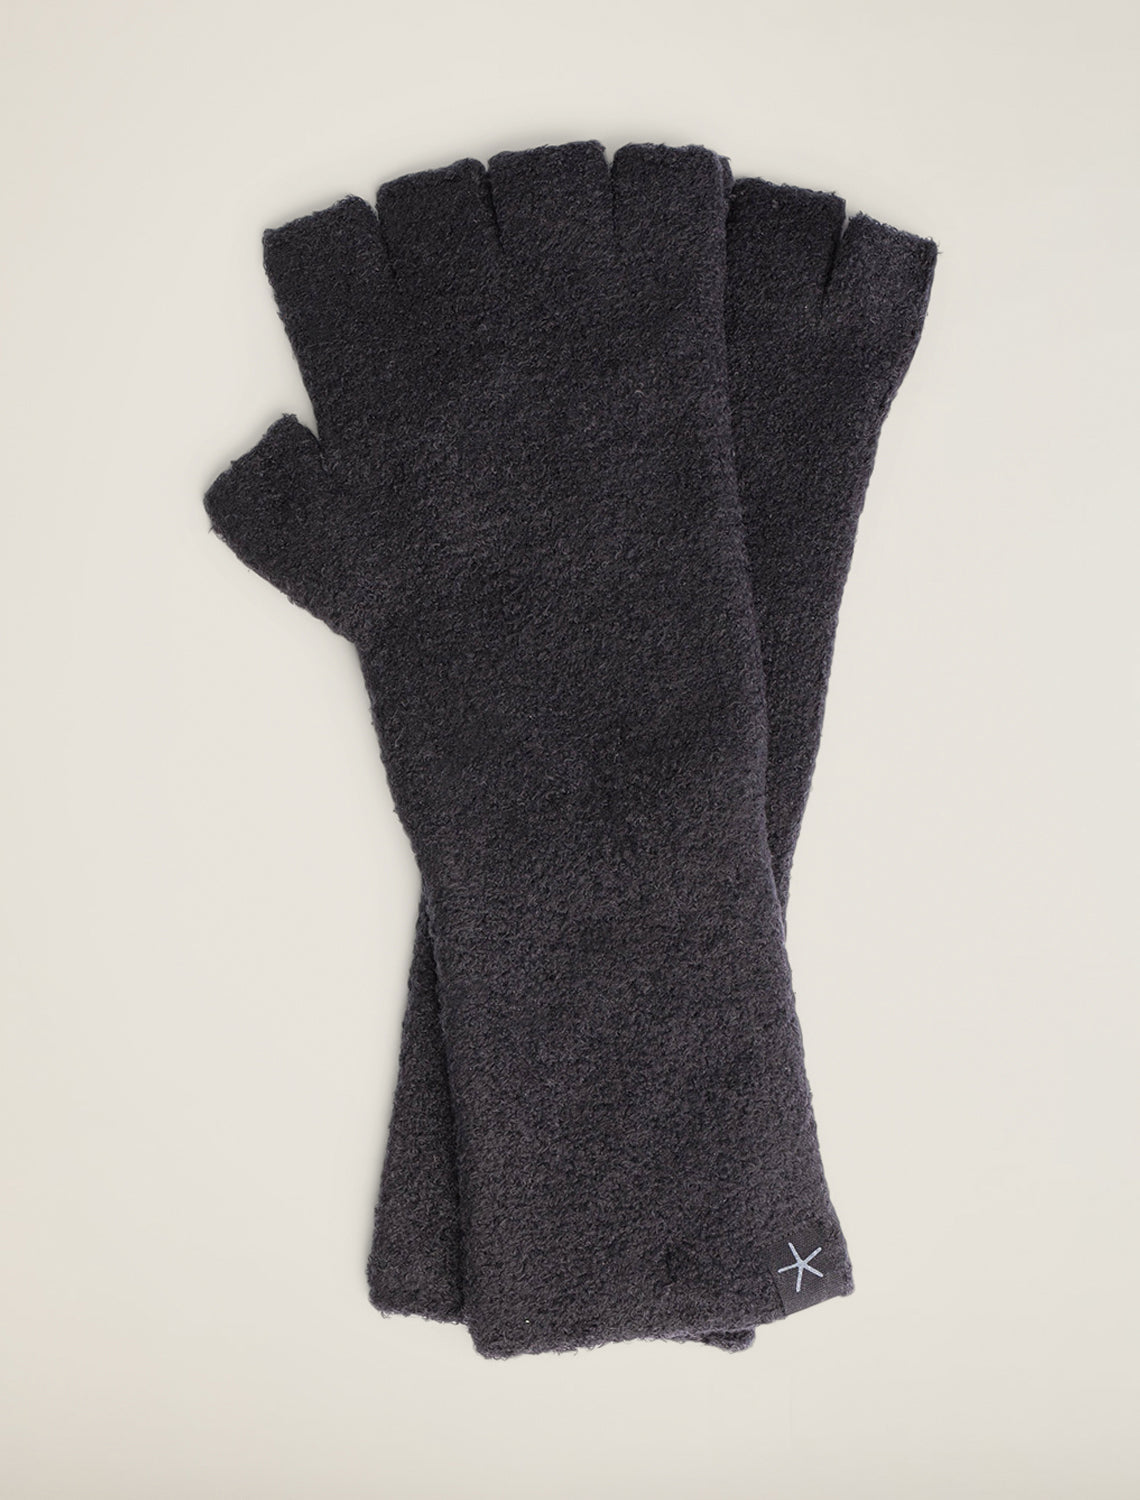 CozyChic Fingerless Gloves - Black